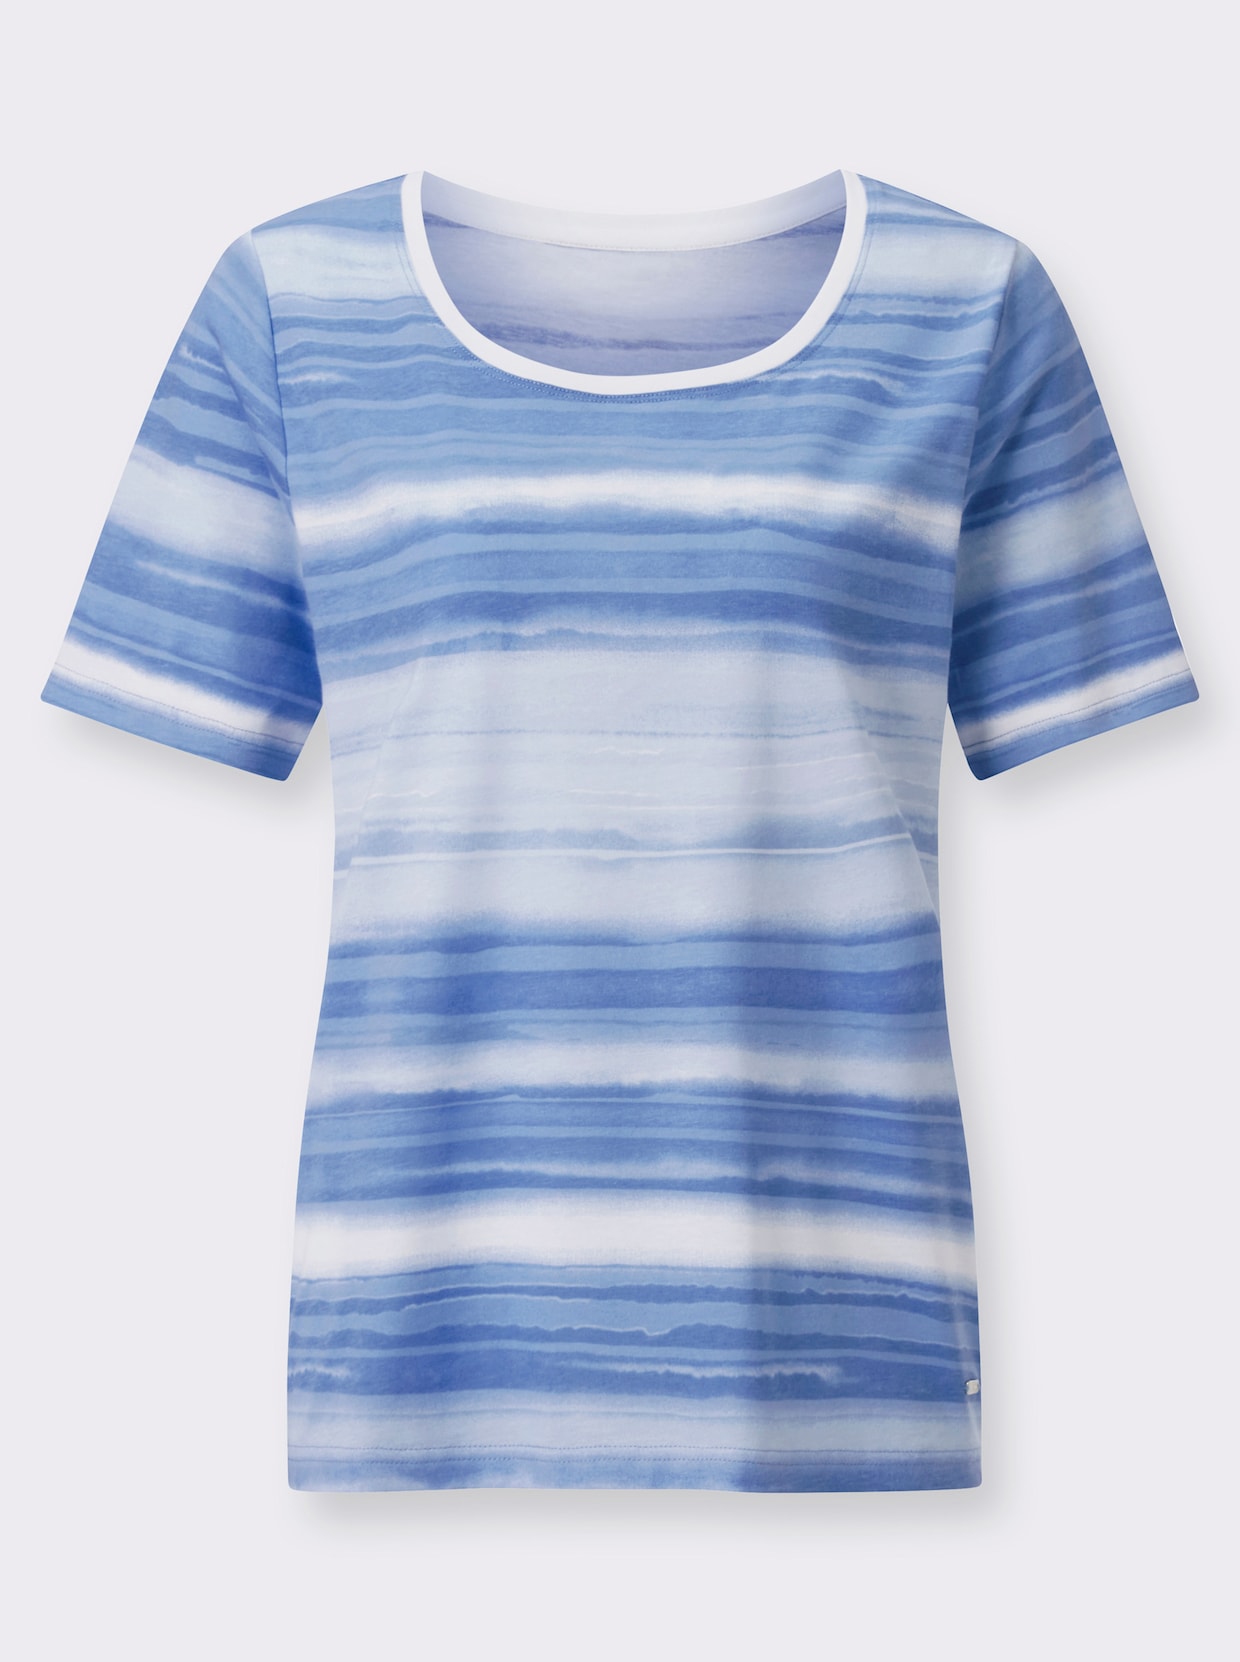 Bedrukt shirt - middenblauw/wit gedessineerd